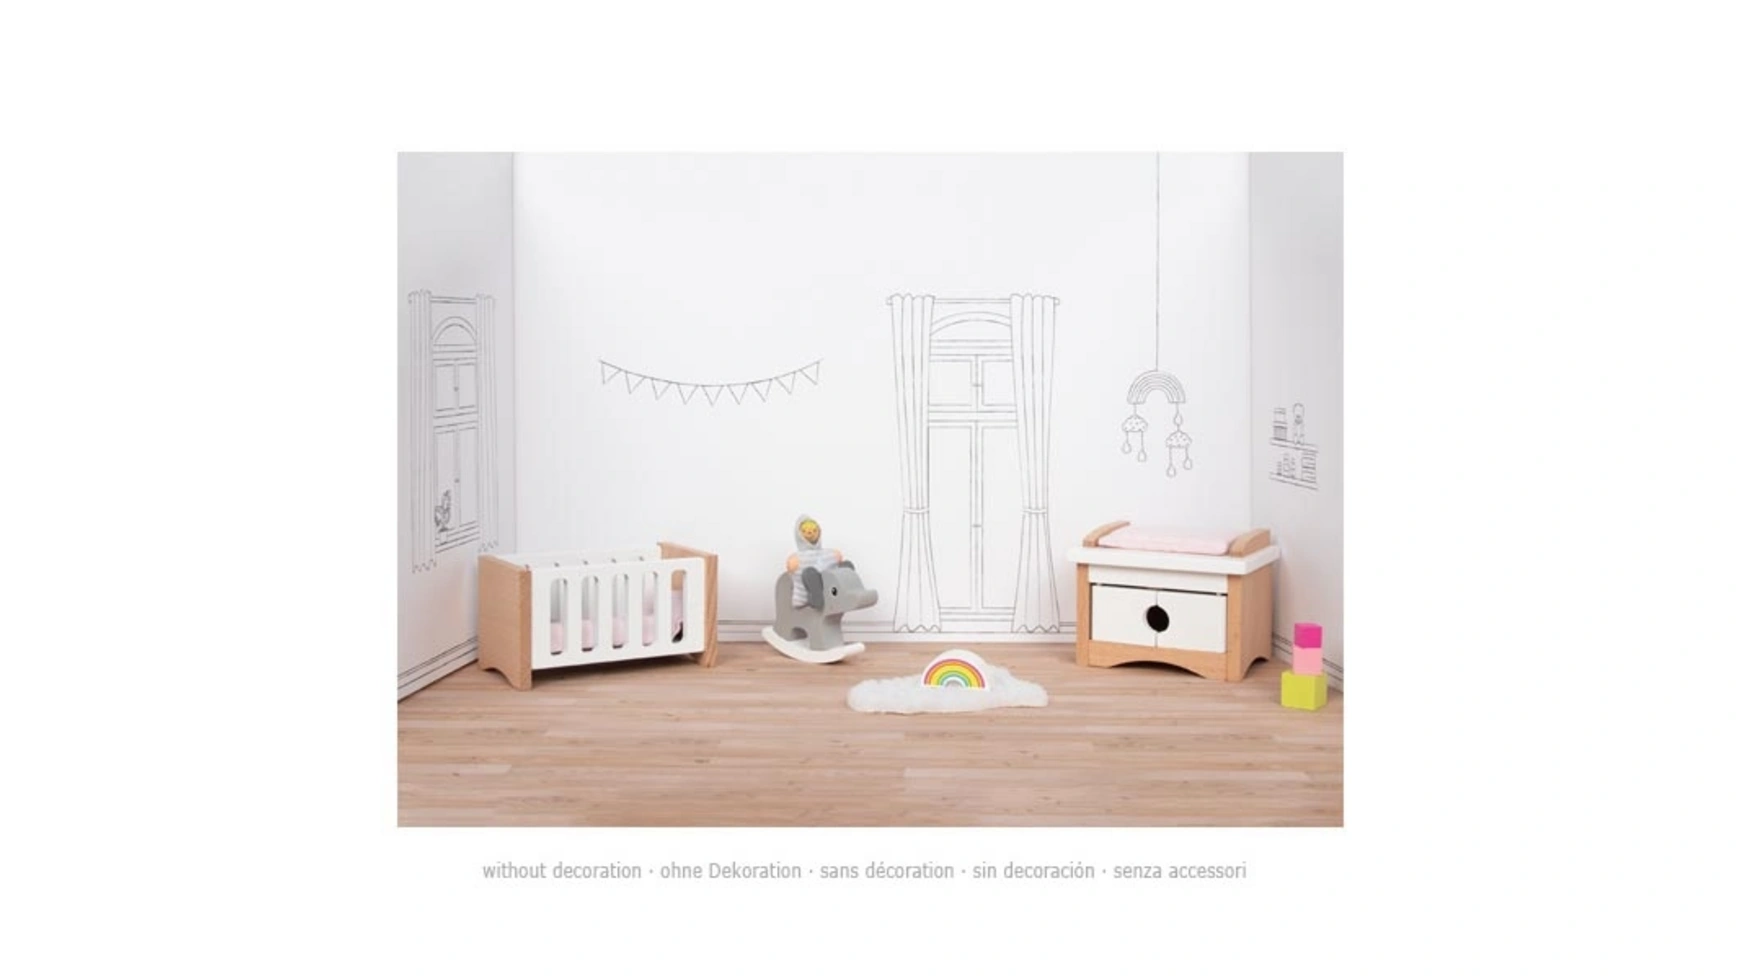 Goki Мебель в стиле куклы, детская комната мебель игрушечная детская комната в коробке